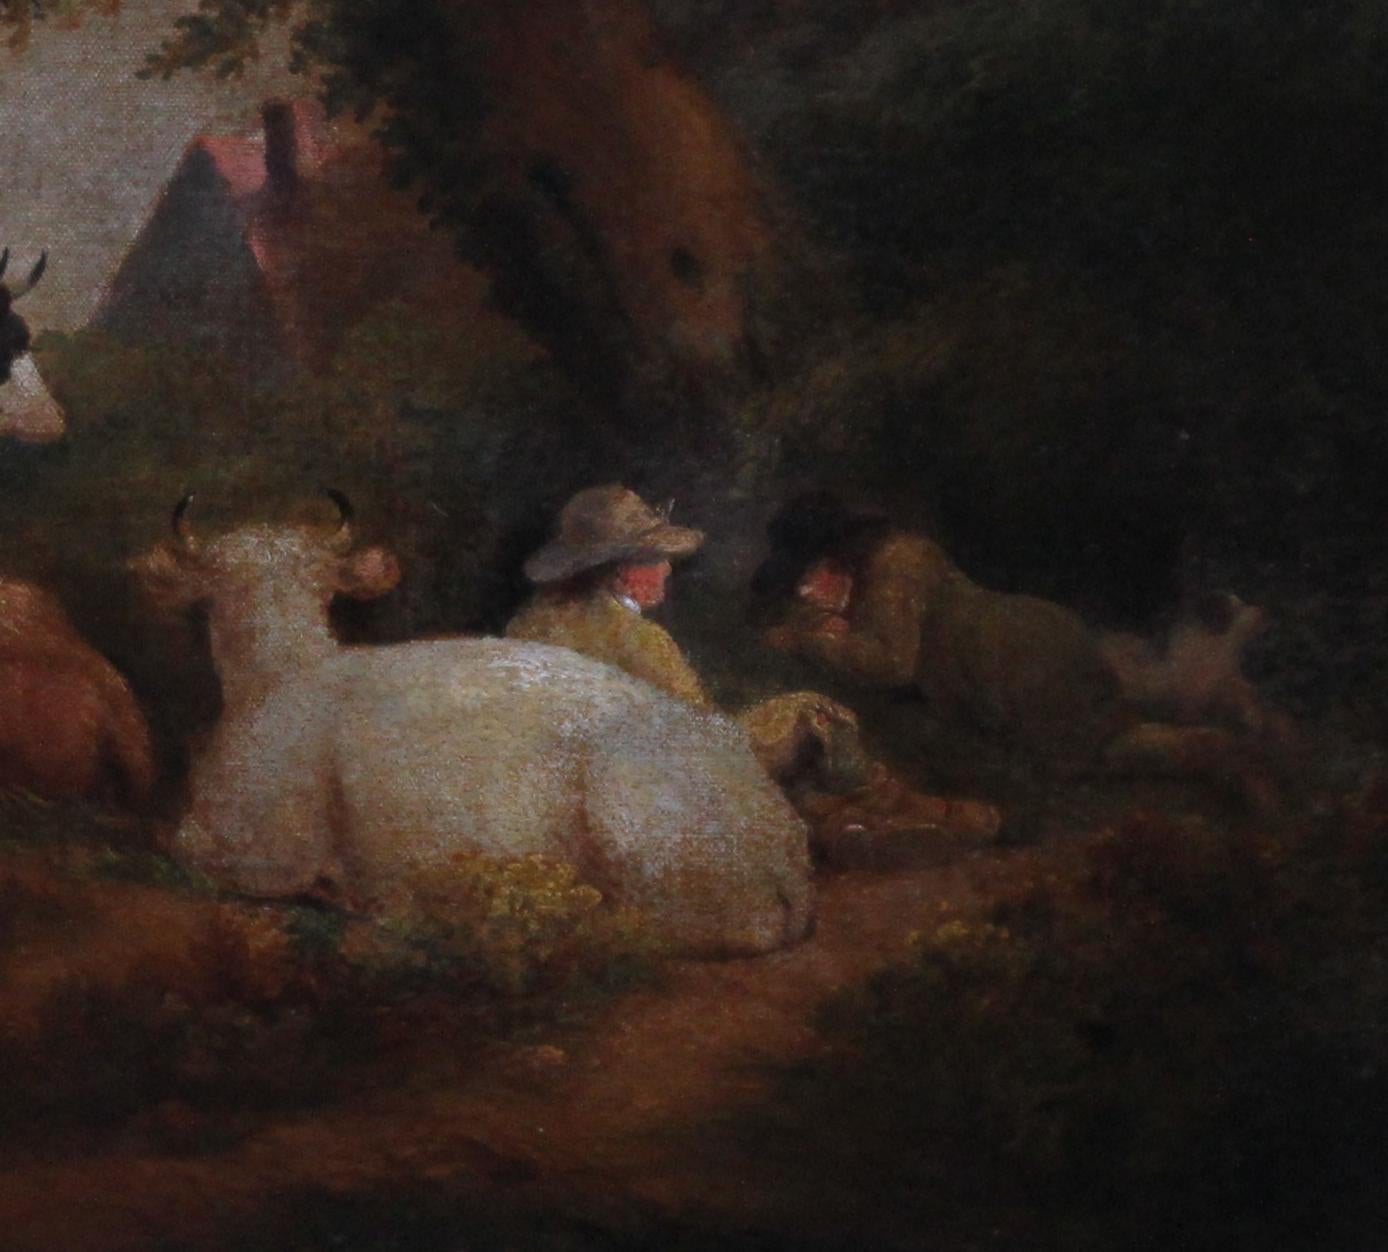 18th century livestock paintings